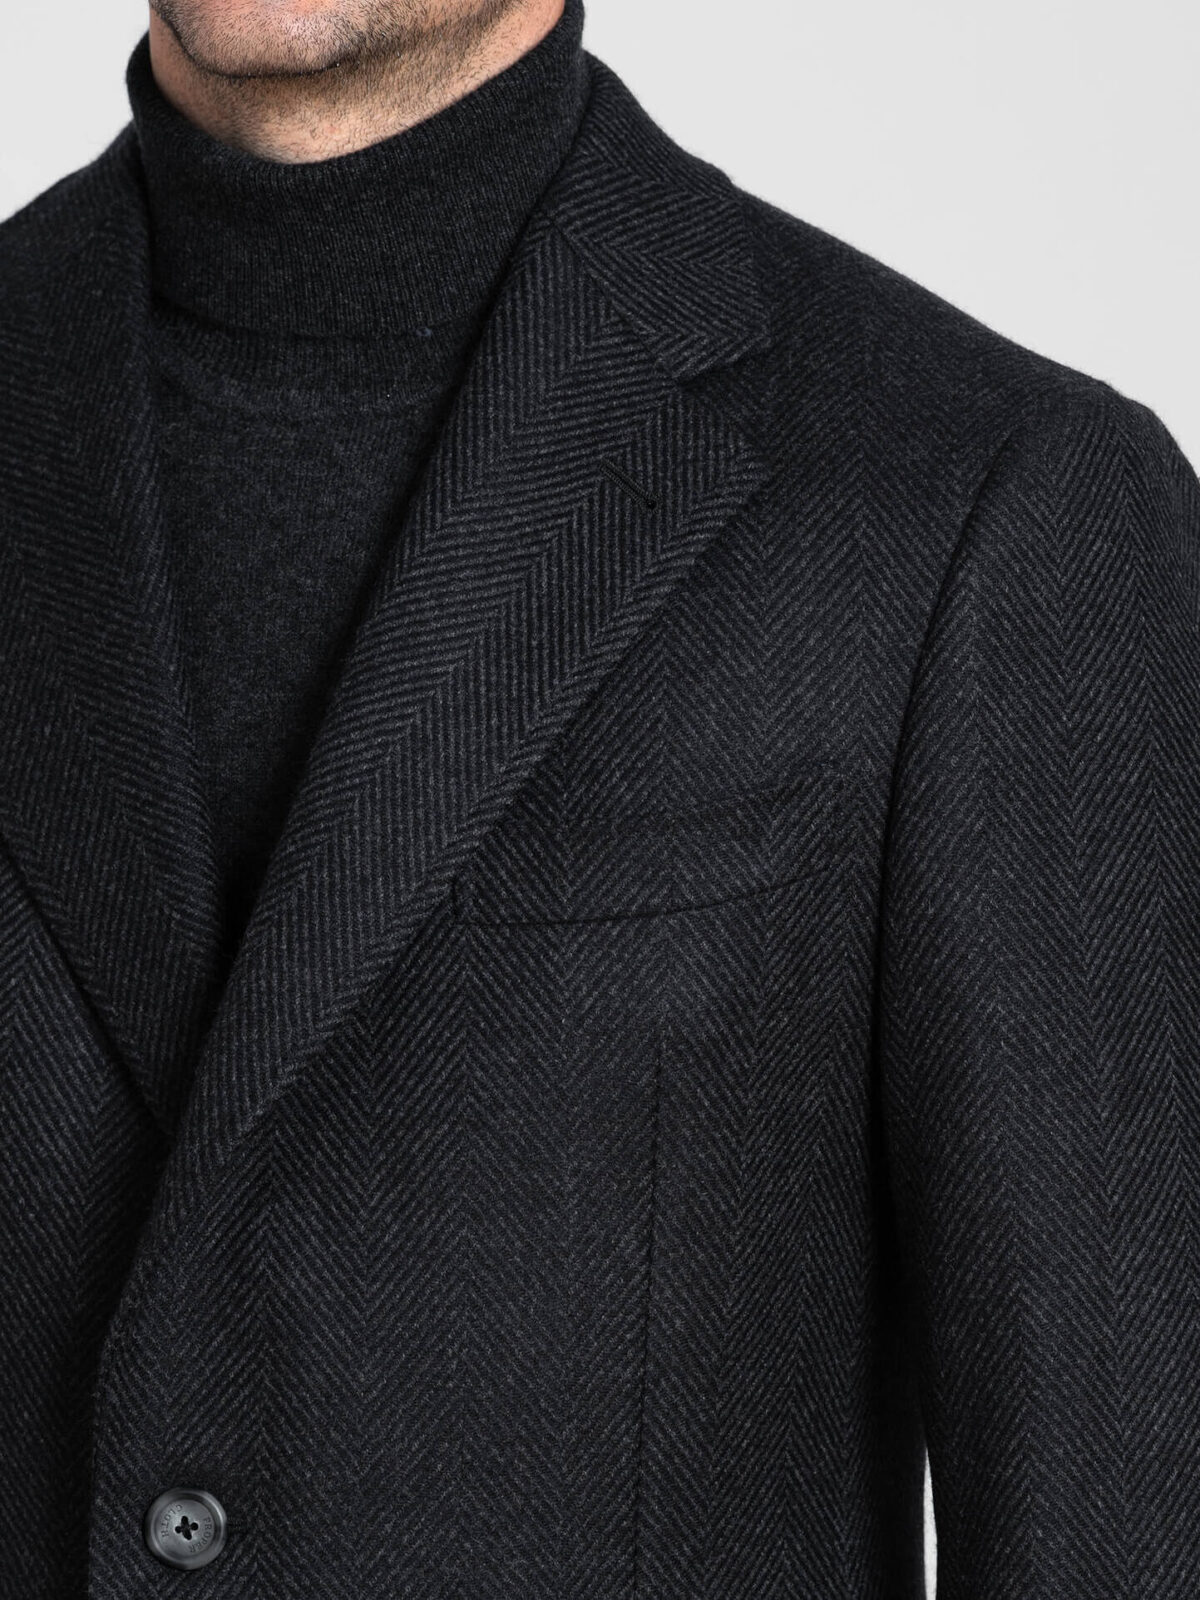 Bleecker Charcoal Herringbone Wool and Cashmere Coat by Proper Cloth